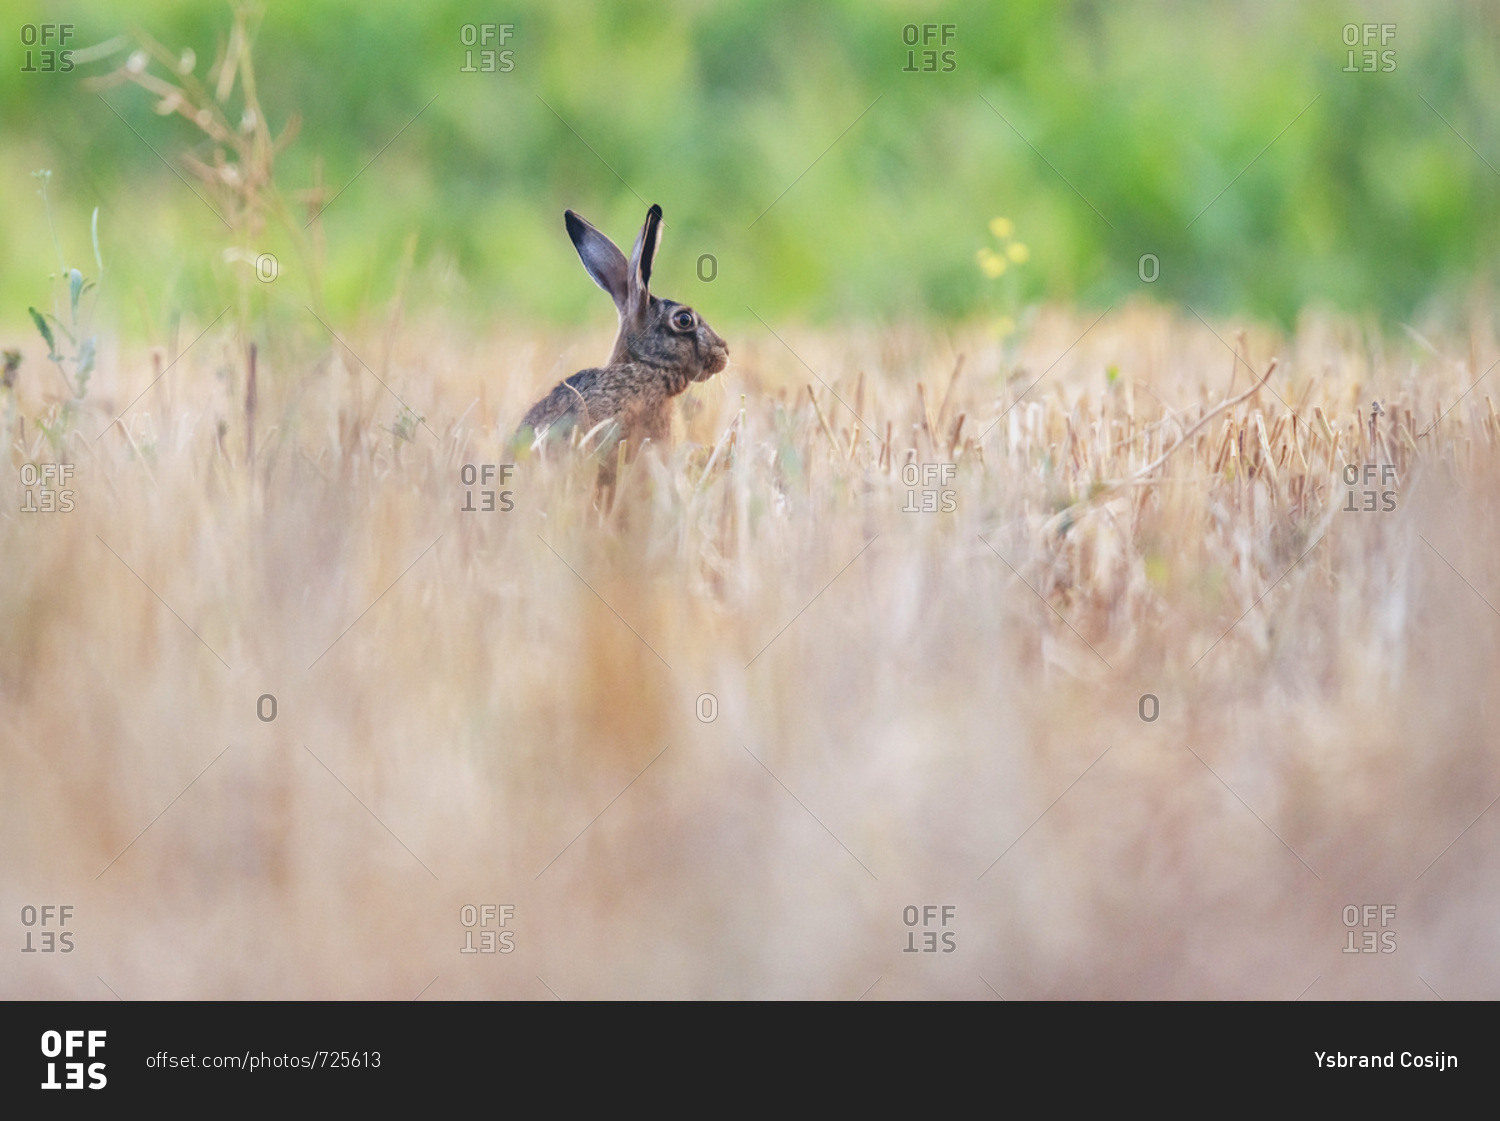 Alert rabbit in field